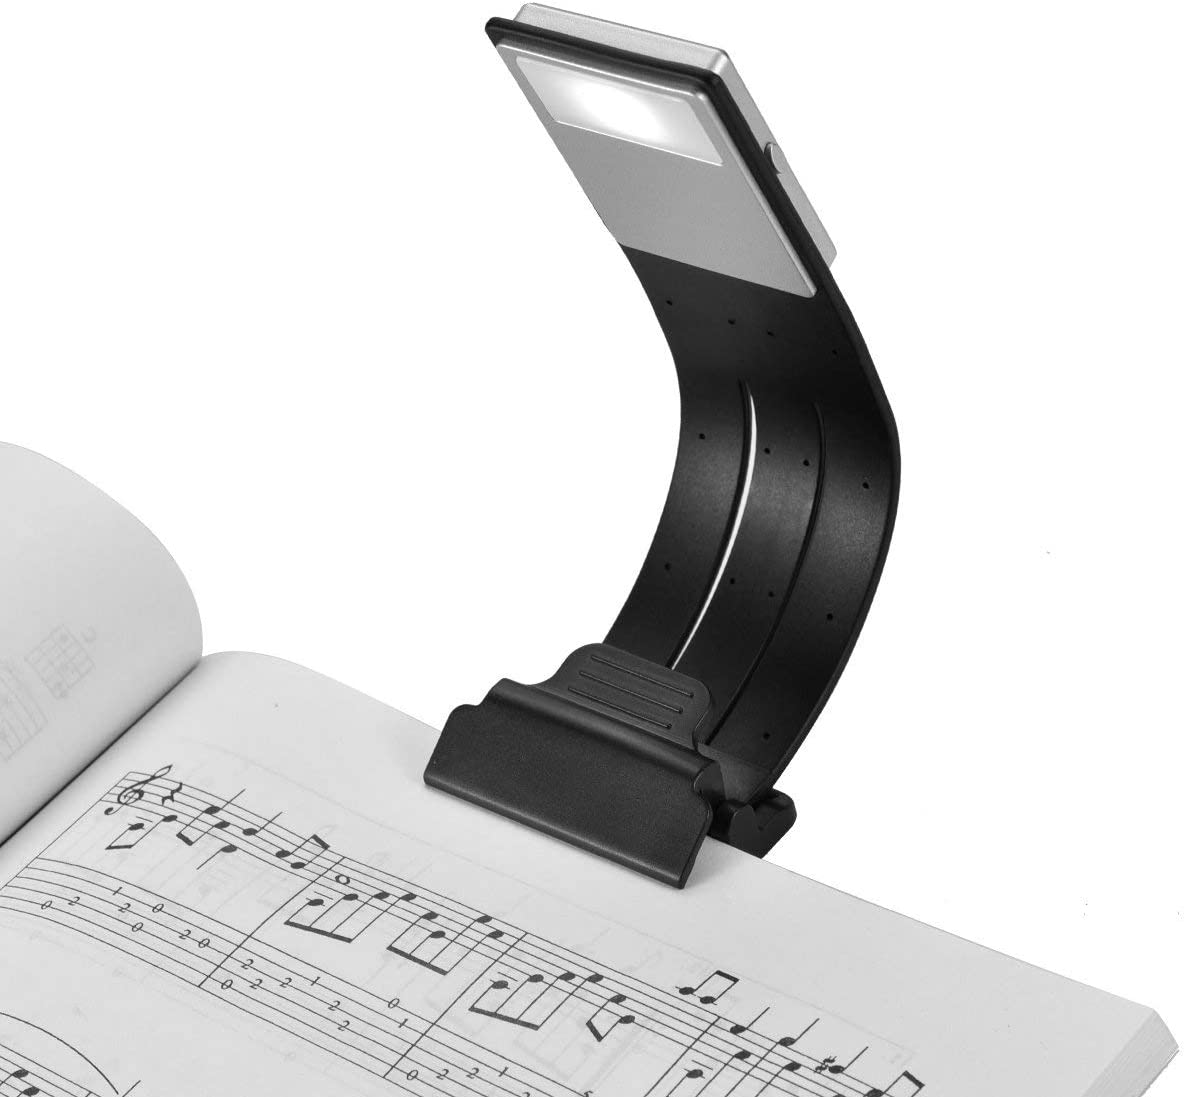 LOAMO 클립 온 북 라이트 USB 충전식 LED 독서 램프 아이케어 더블 북마크 데스크 & 침대 램프 유연하고 책, ipad 등을 위한 4레벨 조광 가능(블랙)